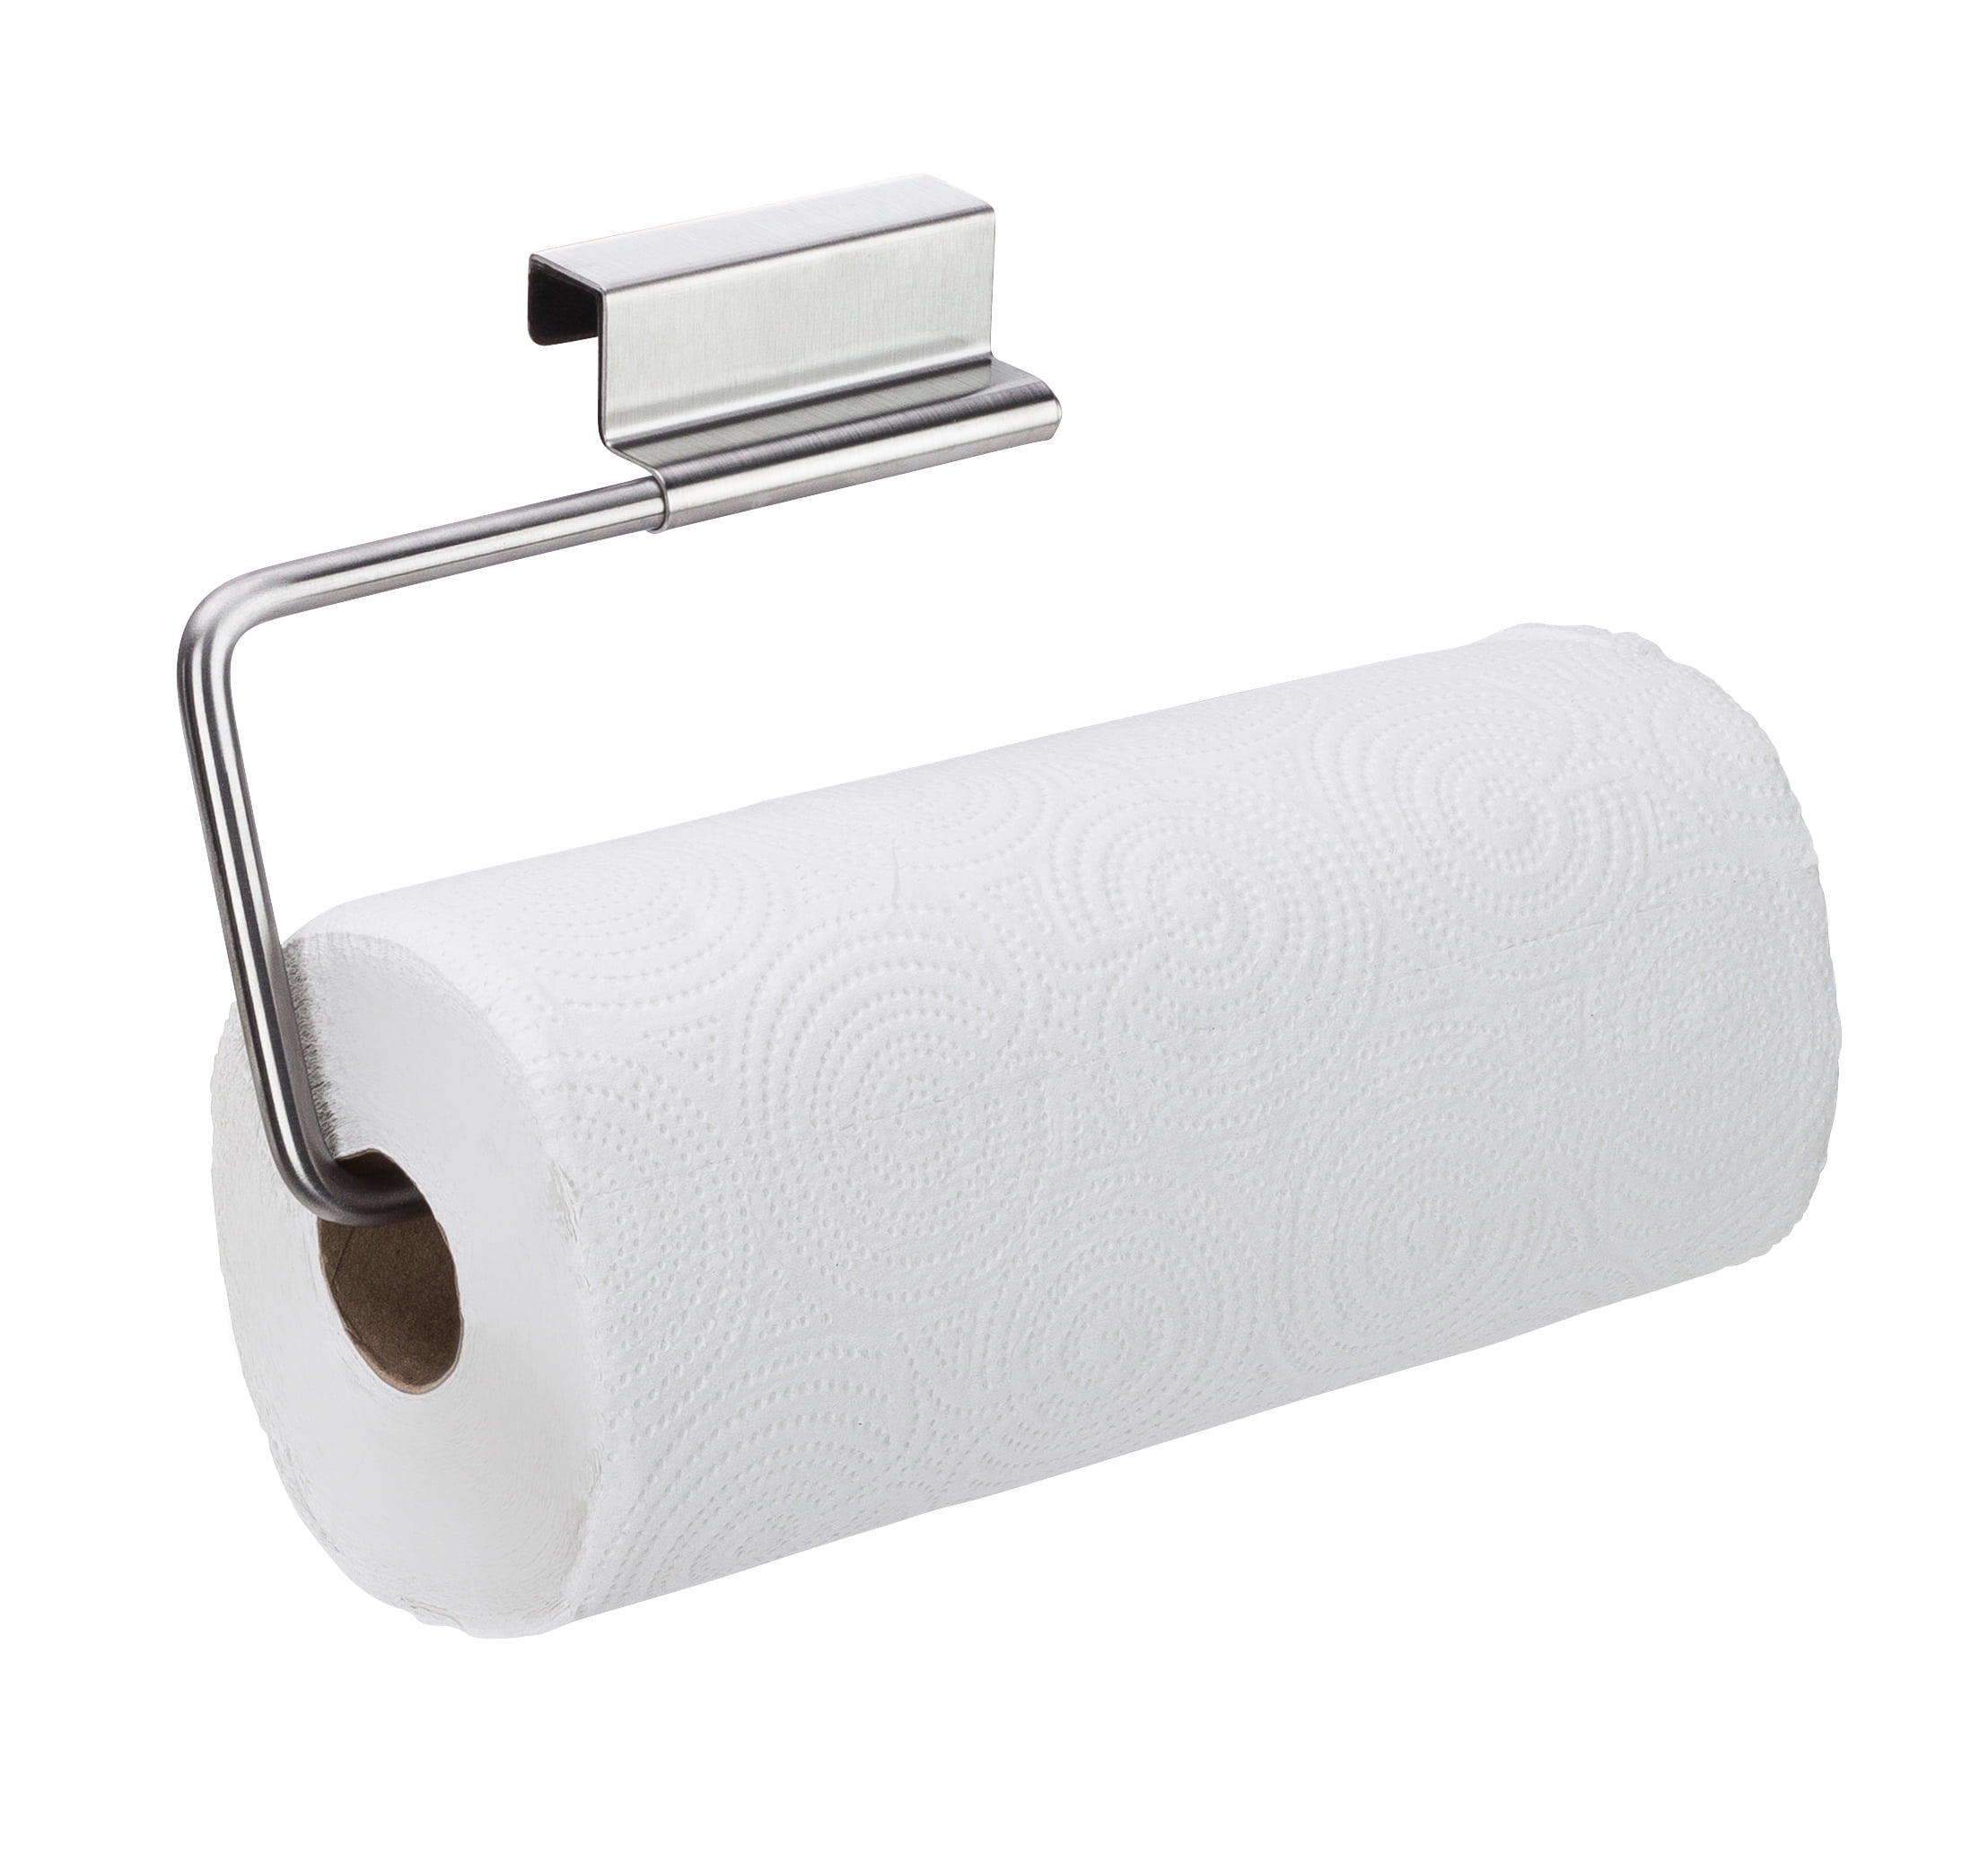 YouCopia Over The Door-Paper Towel RollHolder